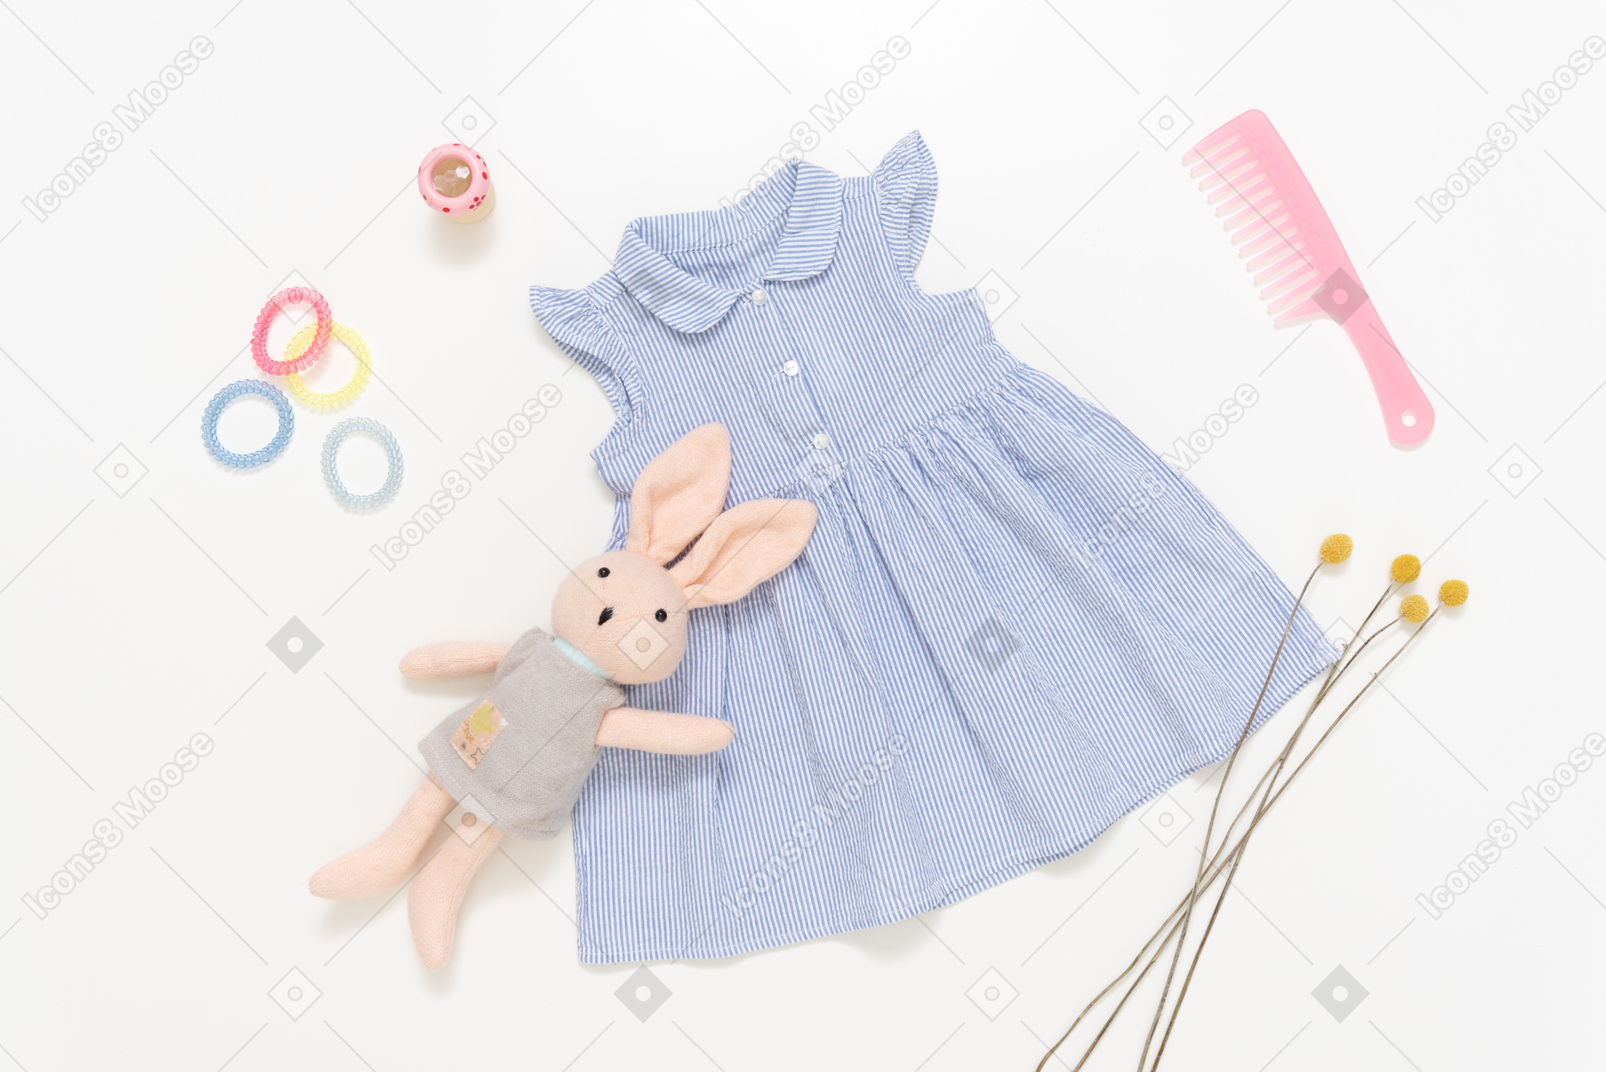 꼬마 소녀의 파란 드레스, 봉제 인형, 분홍색 플라스틱 헤어 브러시 및 액세서리